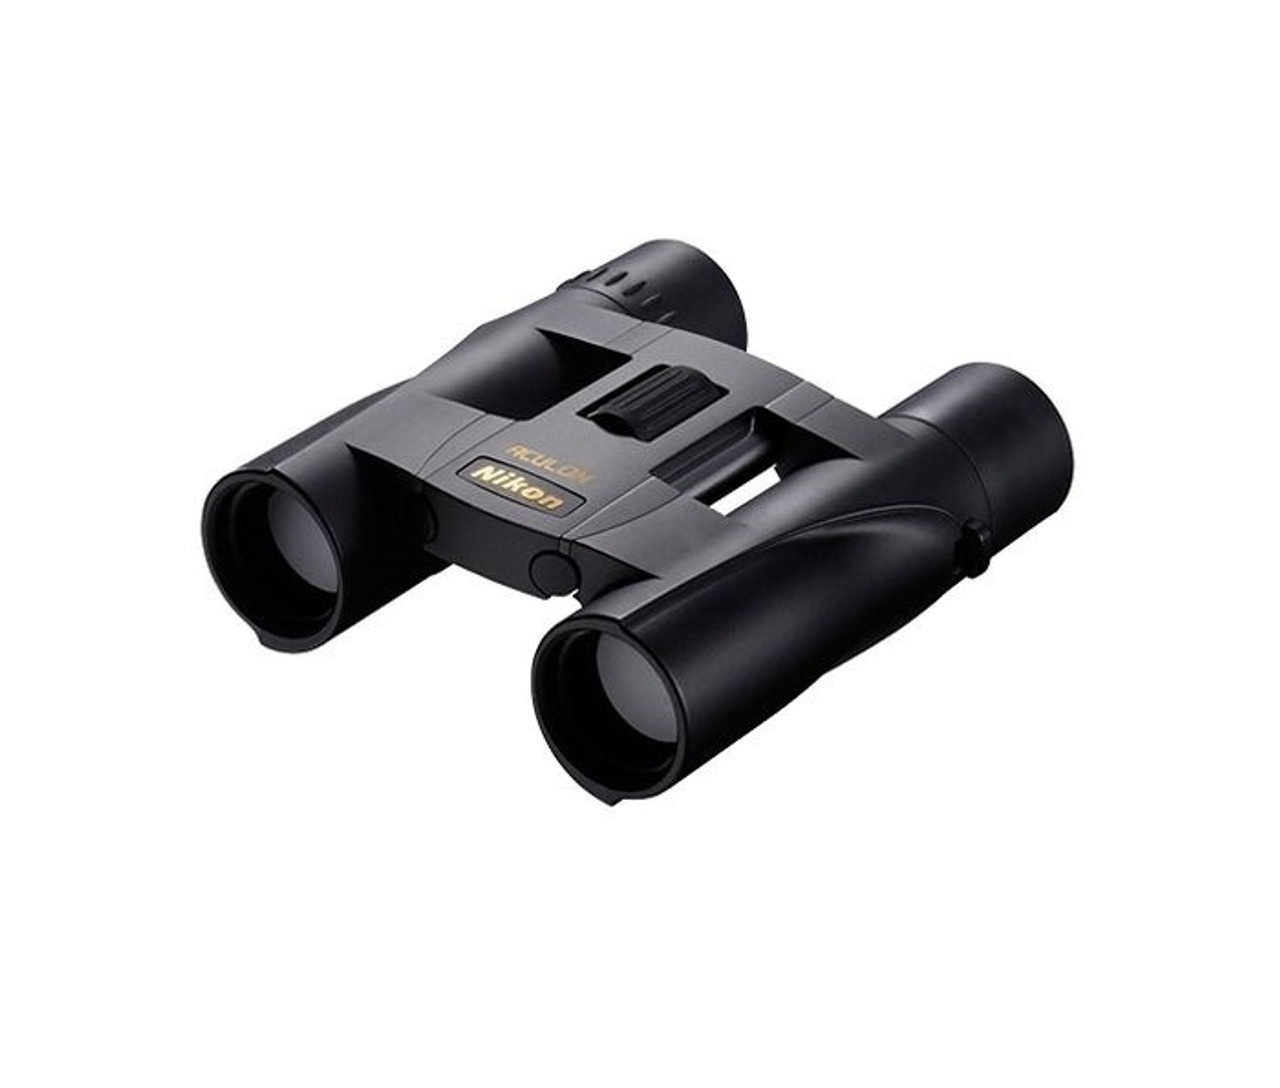 Nikon Aculon A30 8x25 Black Binoculars